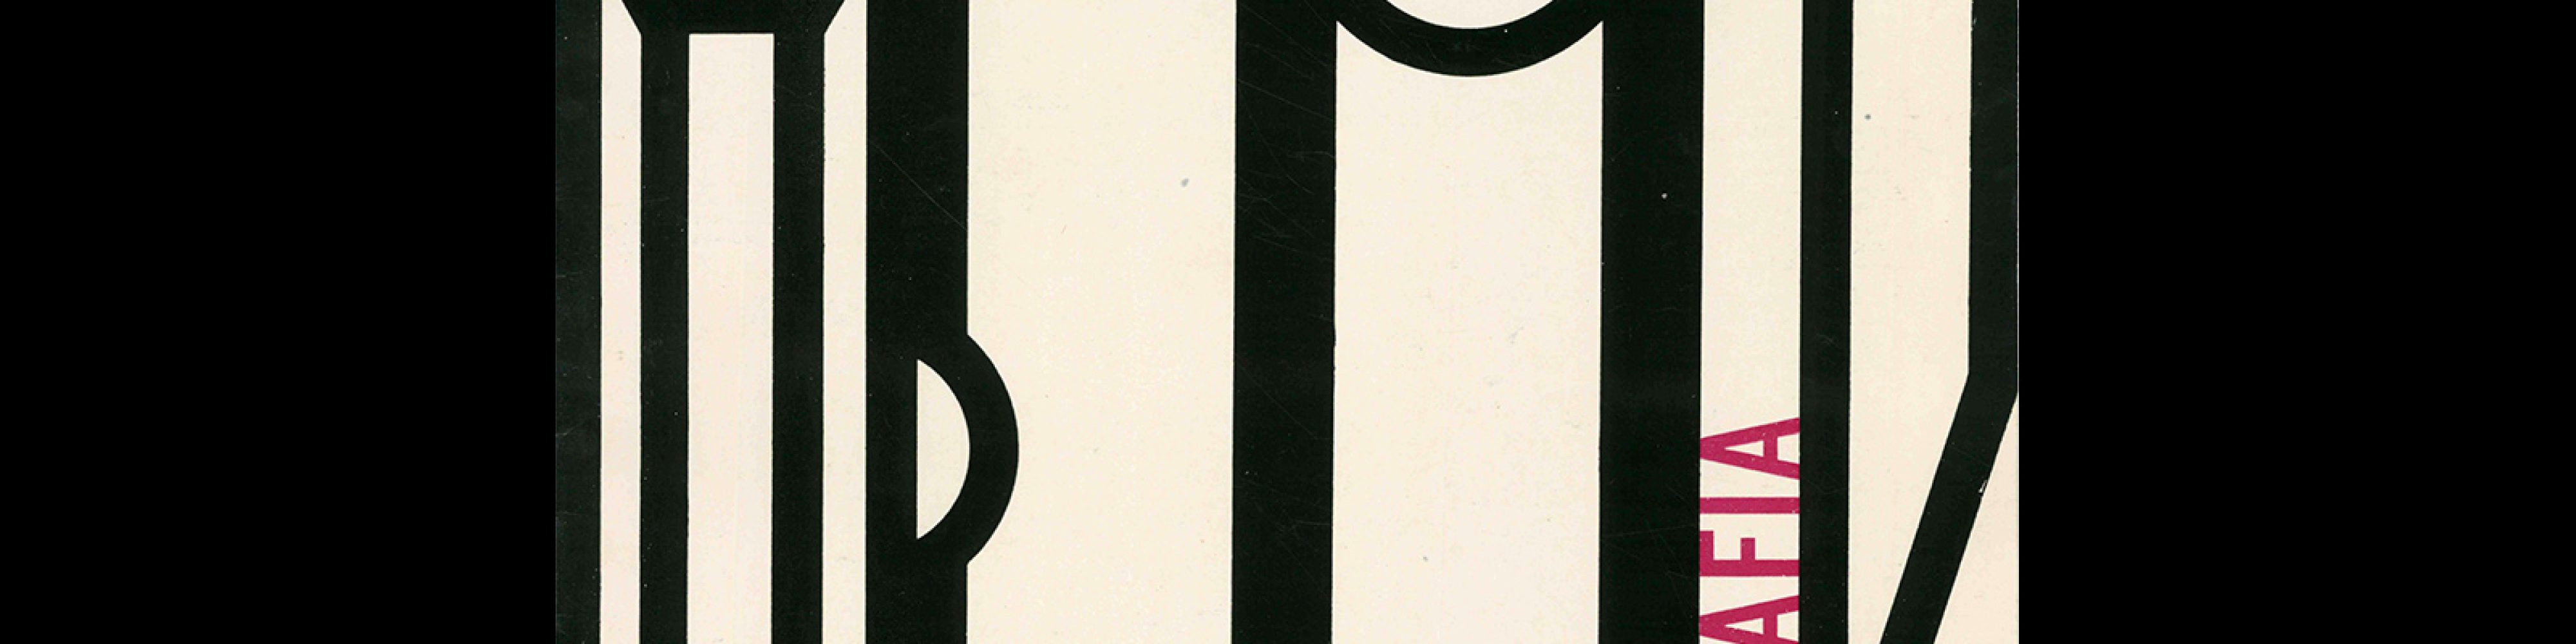 Typografia, ročník 66, 12, 1963. Cover design by Vladislav Najbrt.